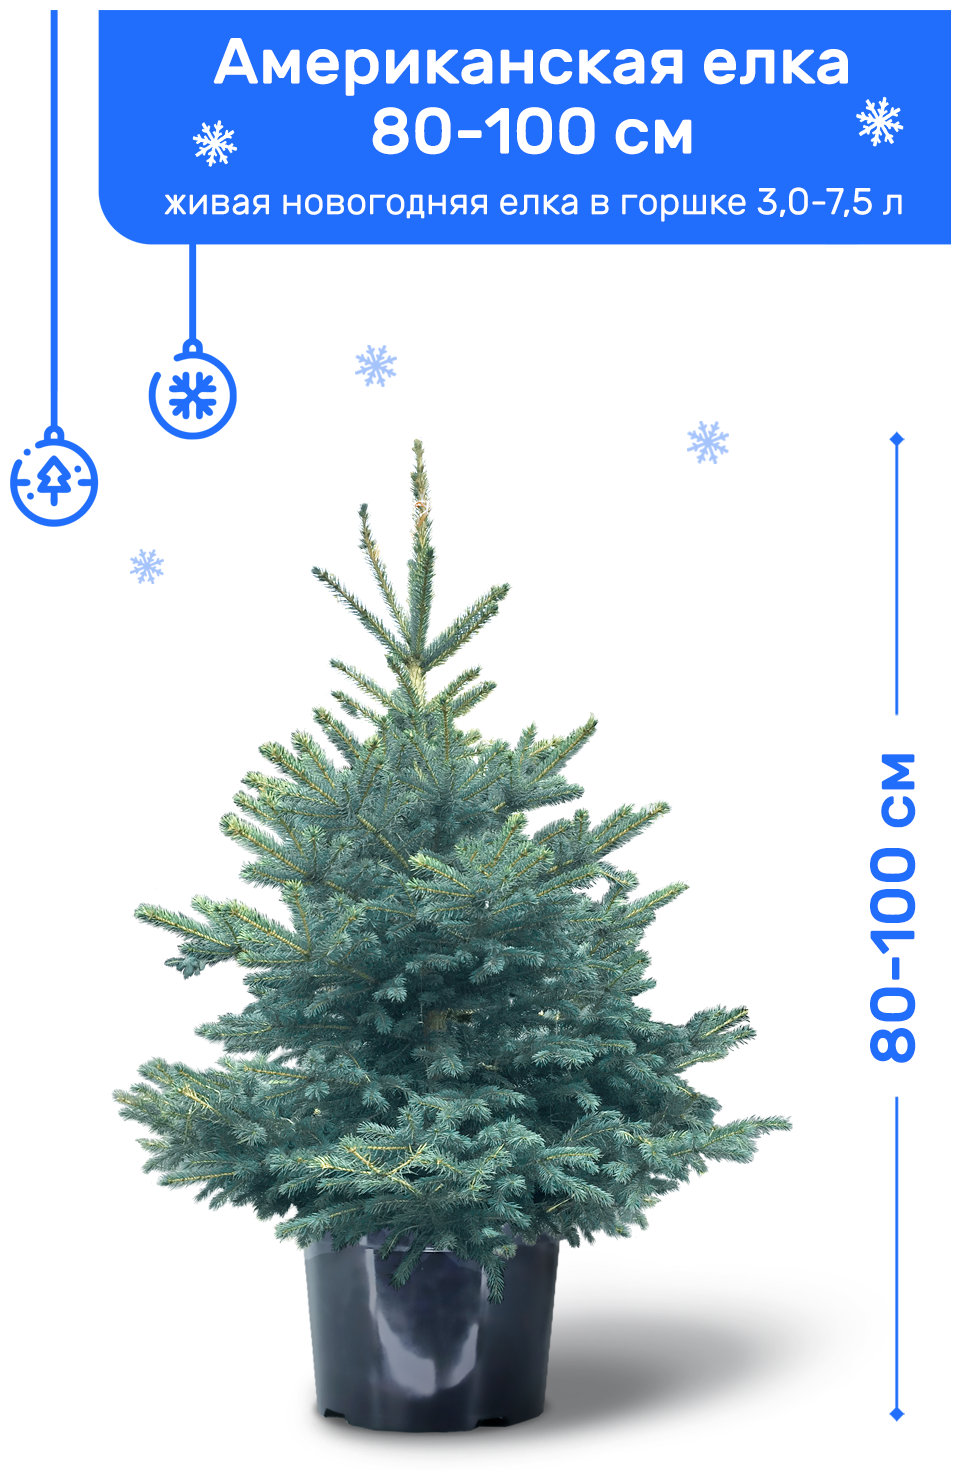 Ель Голубая (Американская) живая новогодняя елка в пластиковом горшке